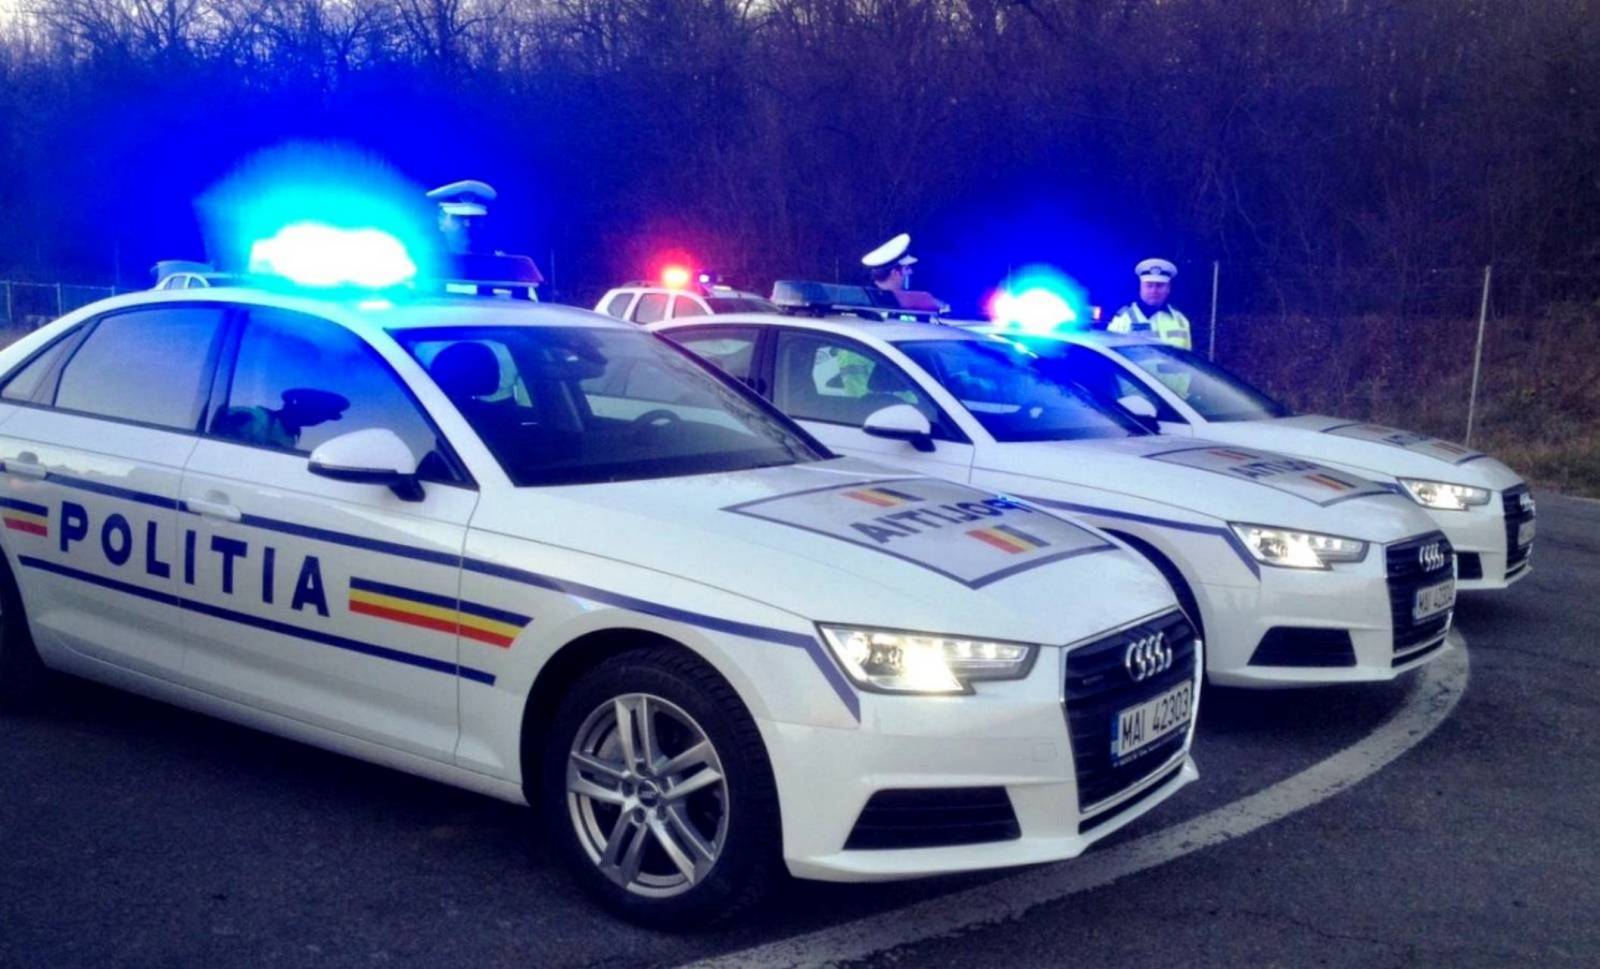 Ernsthafte Aufmerksamkeit der rumänischen Polizei an alle Rumänen